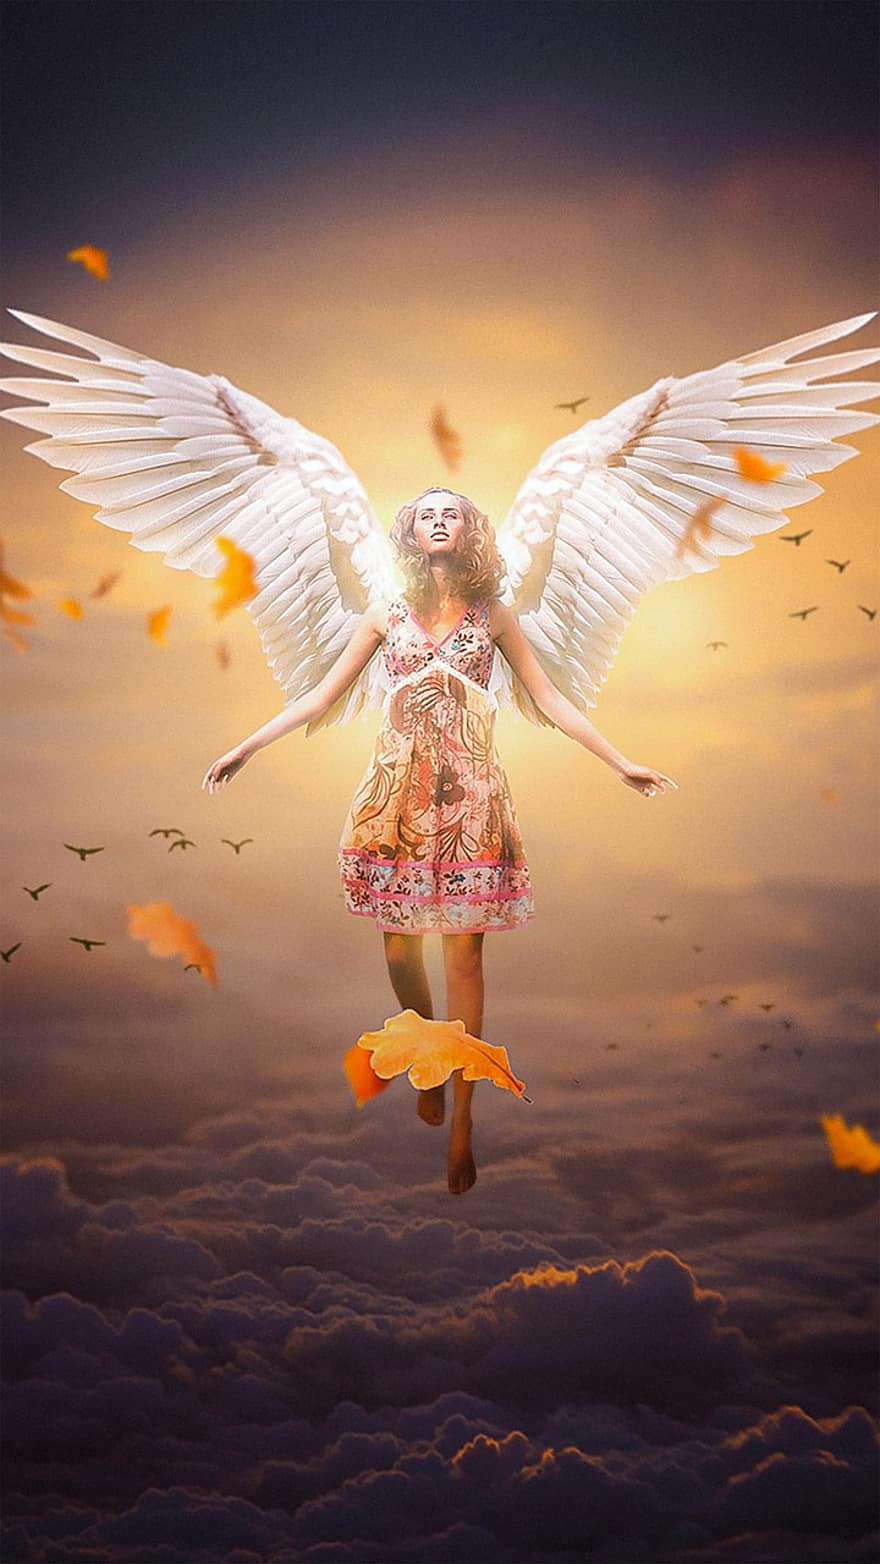 천사, 여자, 날개, 천사 날개, 공상, 여성 천사, 꿈, 하늘, 소녀, 포토 몽타주, 사진 조작